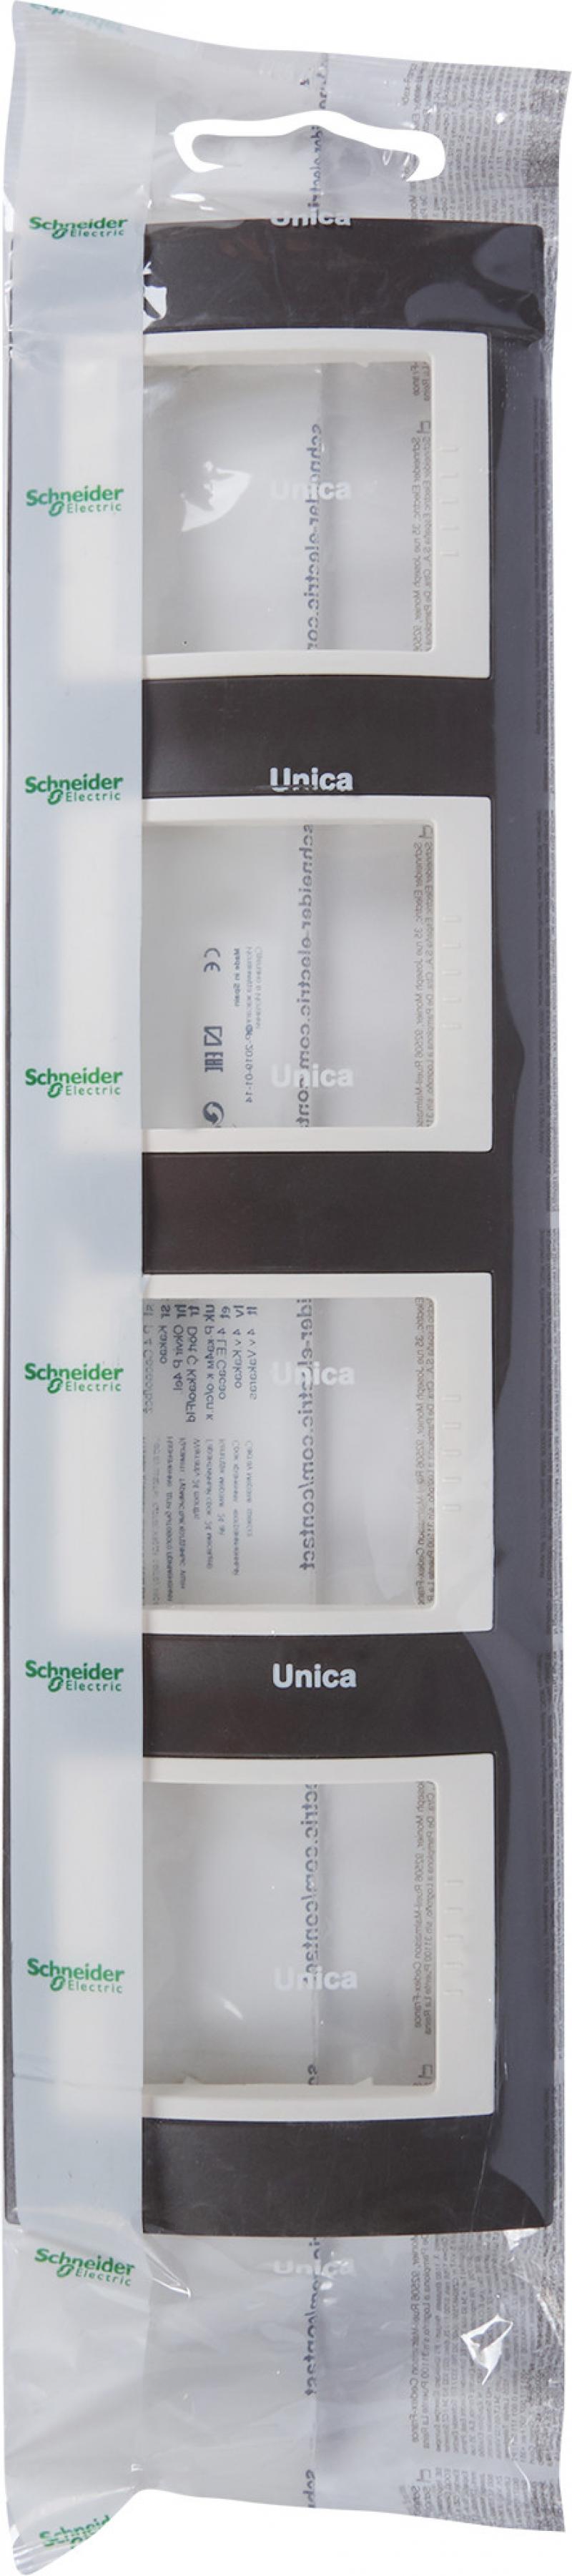 Рамка для розеток и выключателей Schneider Electric Unica 4 поста, цвет какао/бежевый